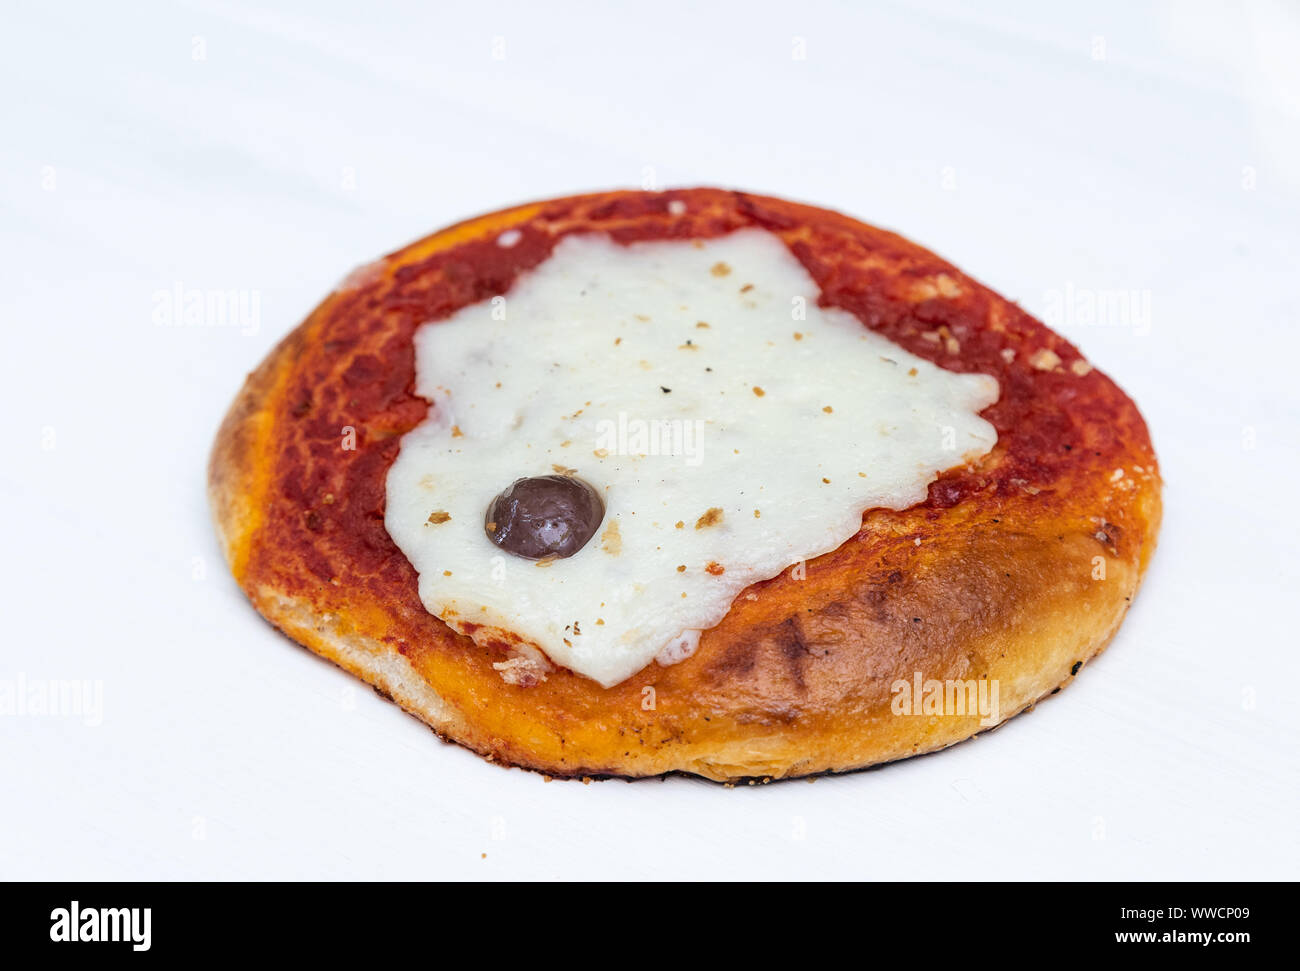 Pizzetta sicilien. Une rue typique de la nourriture de la Sicile. Faite avec l'olive, la tomate et le fromage. Banque D'Images